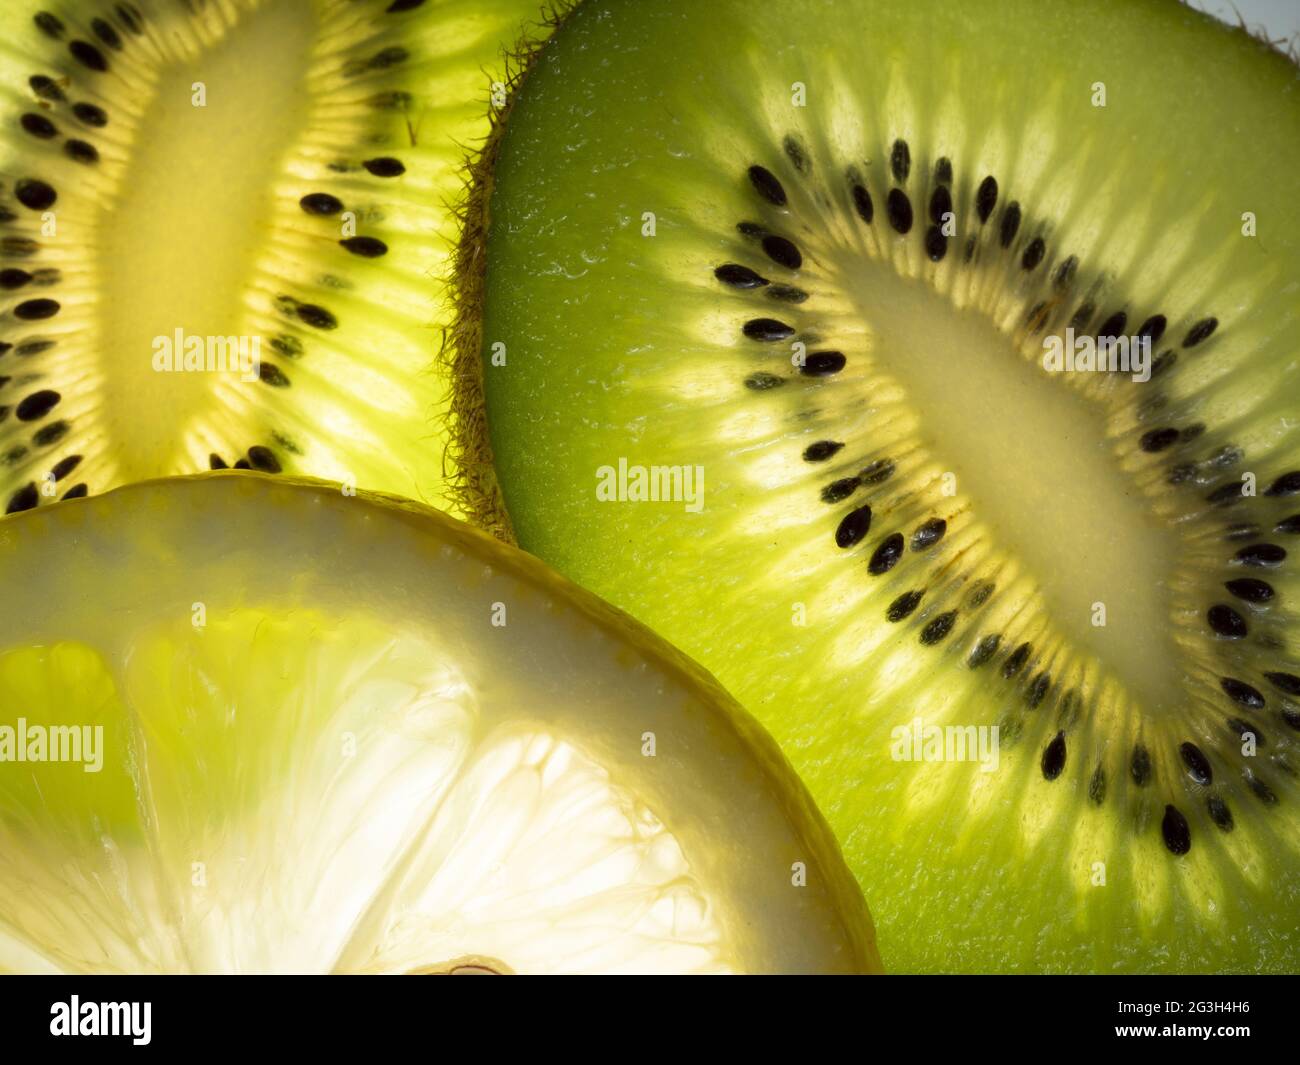 kiwi and lemon wedges Stock Photo